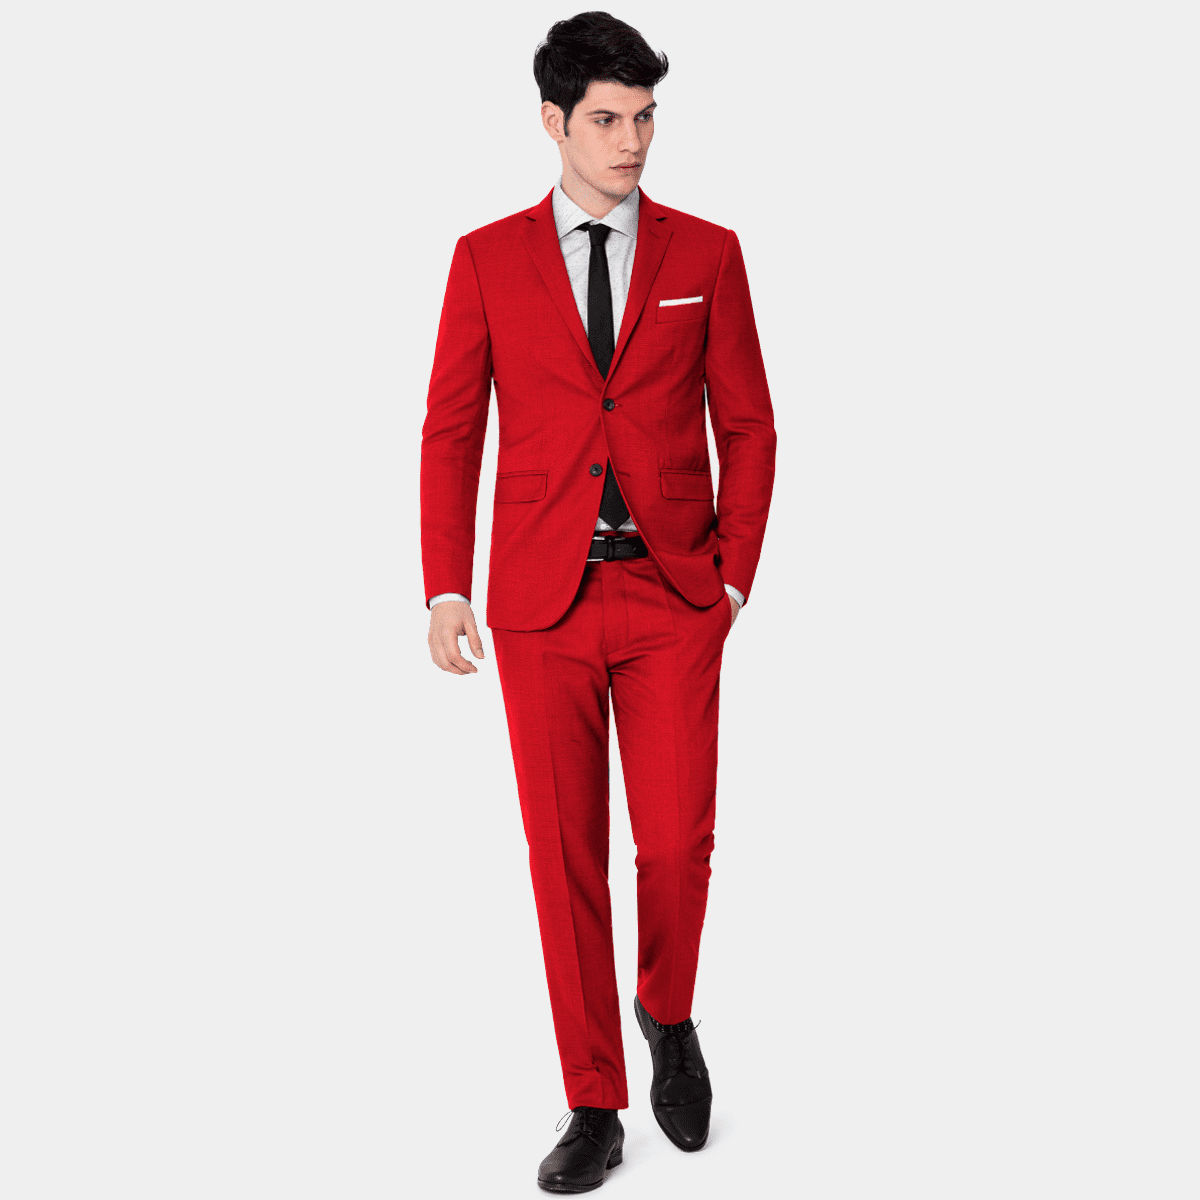 Veste costume Rouge homme dans costumes pour homme